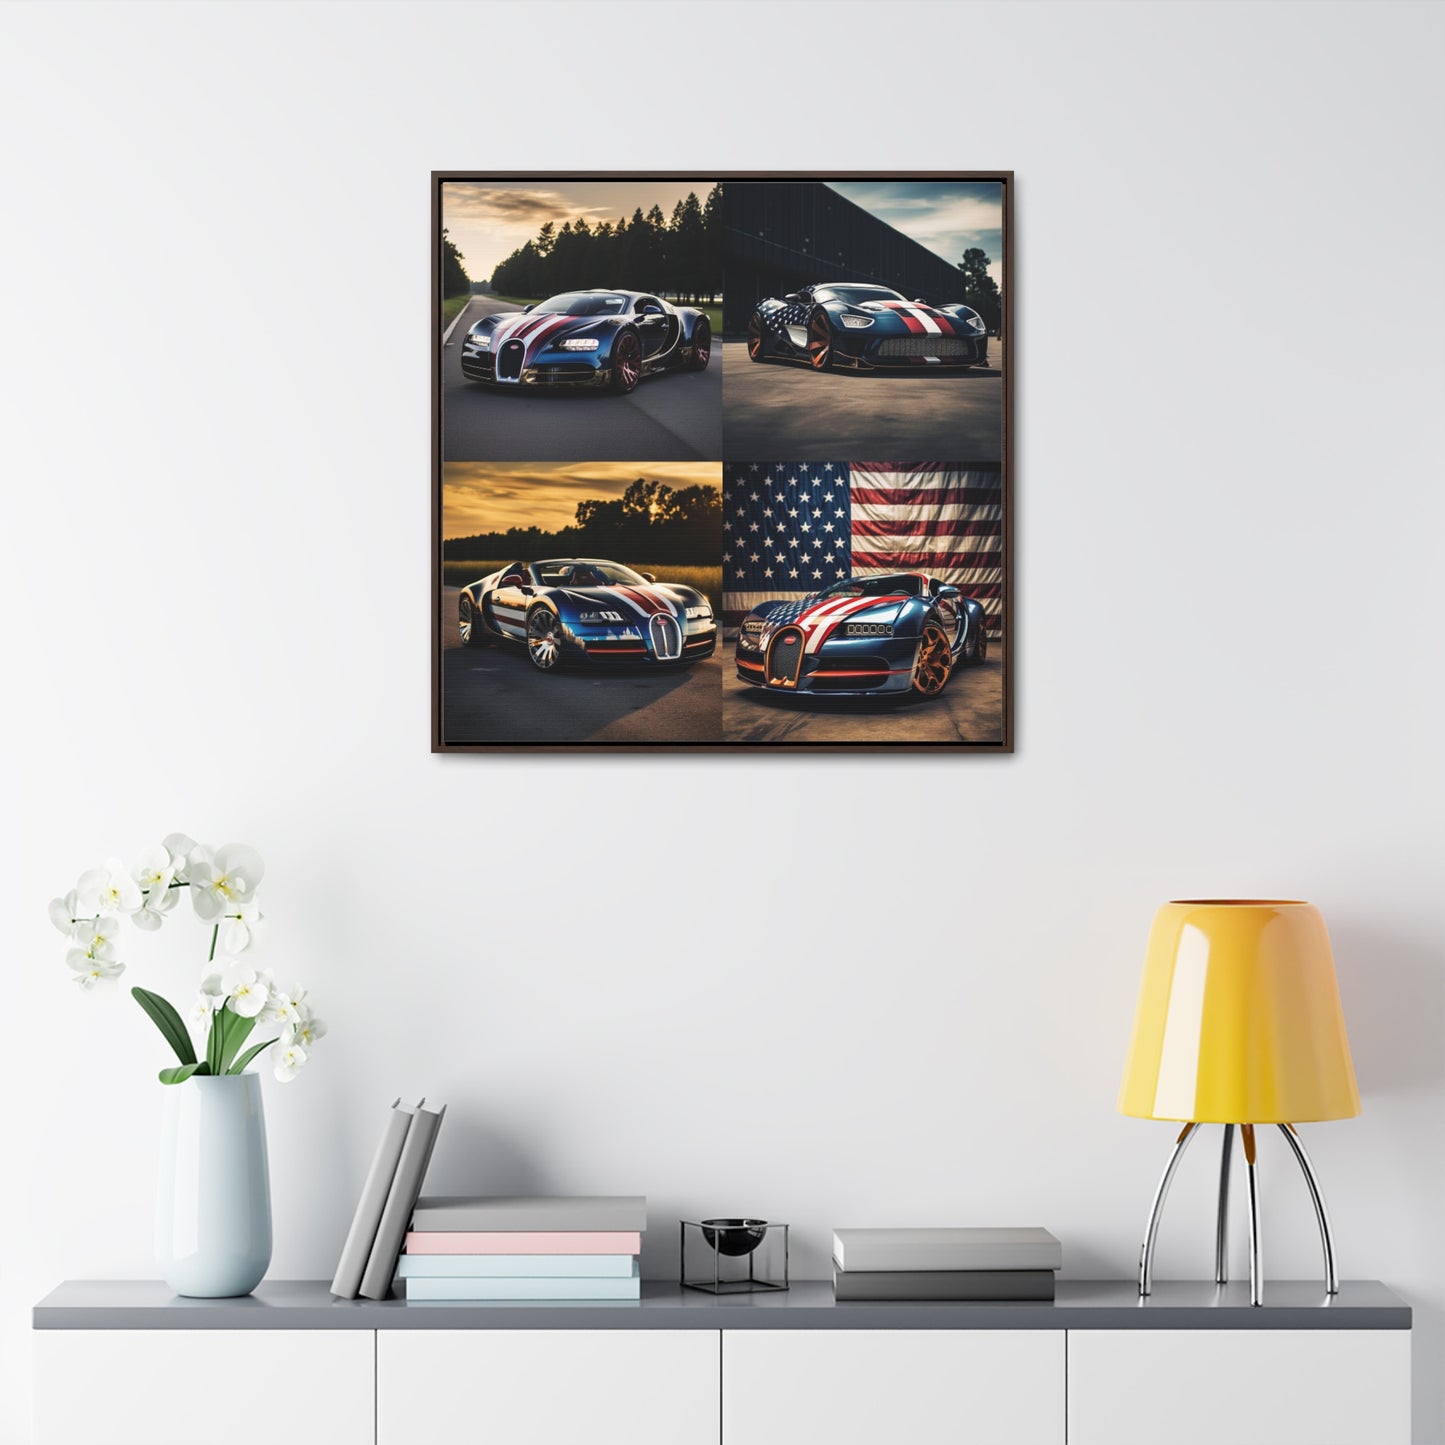 Gallery Canvas Wraps, Square Frame Bugatti Flag American 5